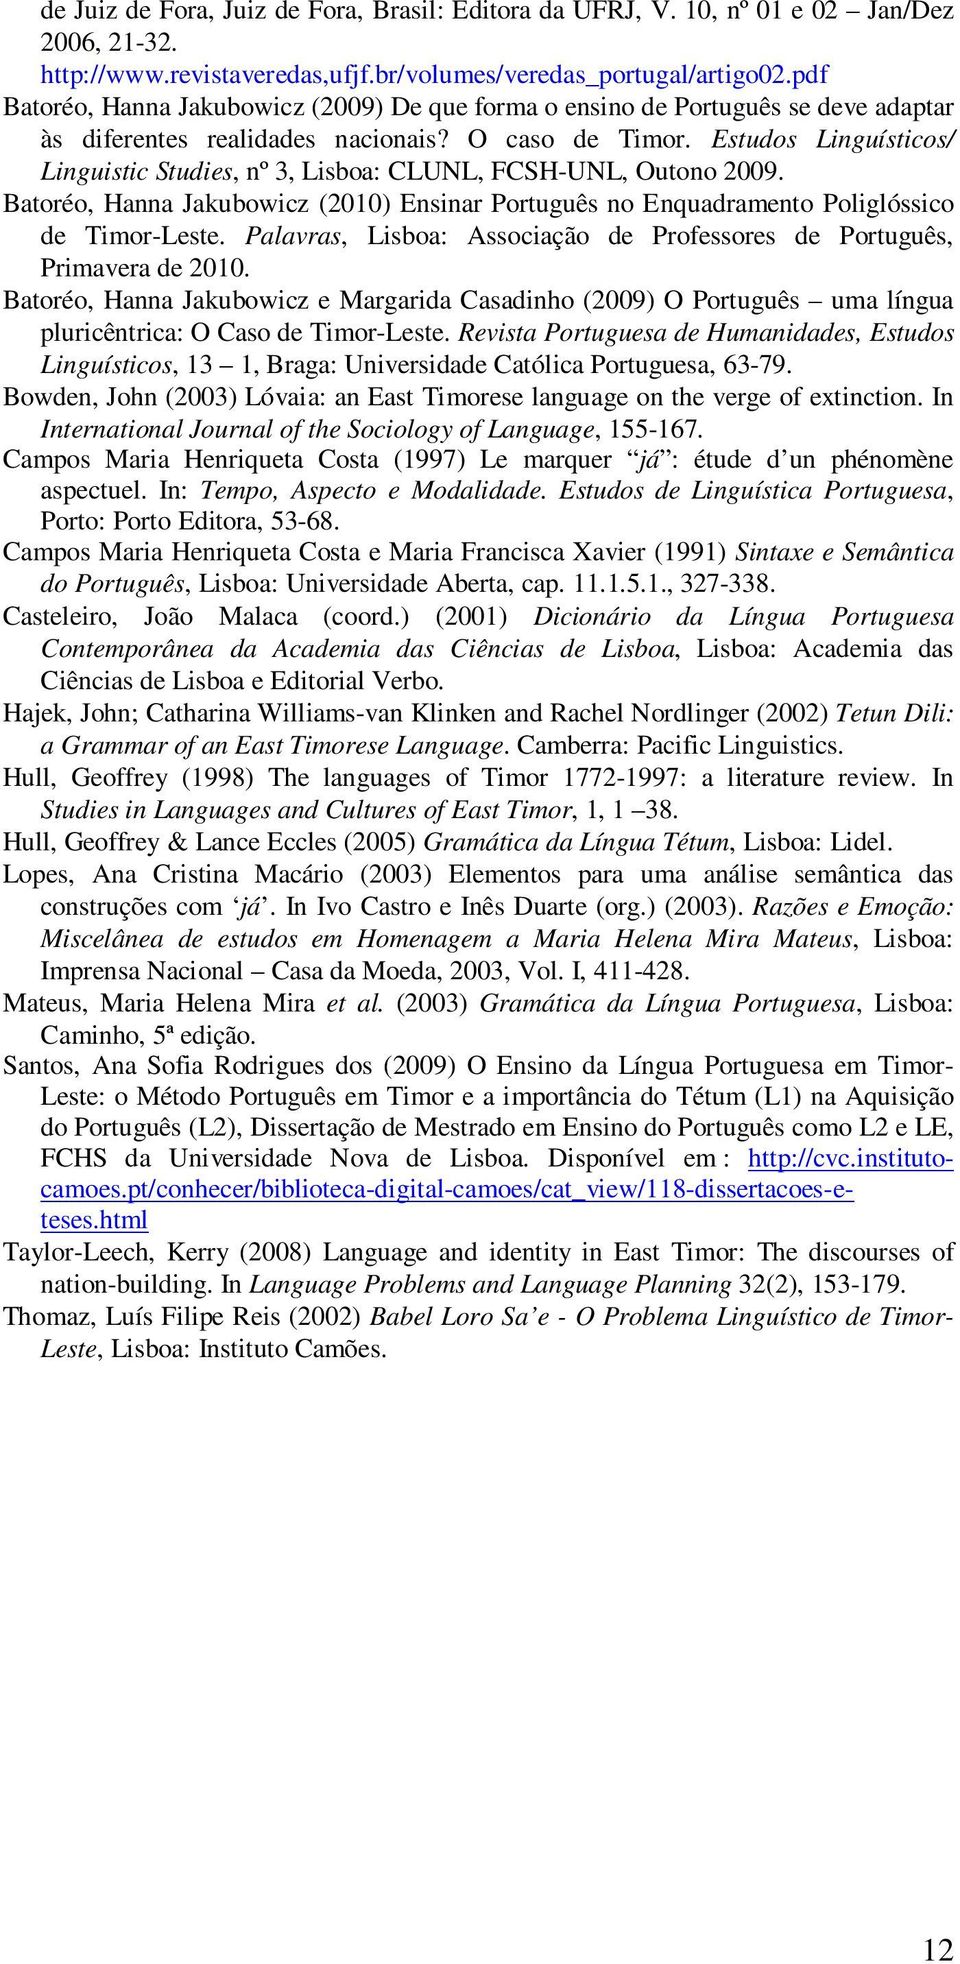 Estudos Linguísticos/ Linguistic Studies, nº 3, Lisboa: CLUNL, FCSH-UNL, Outono 2009. Batoréo, Hanna Jakubowicz (2010) Ensinar Português no Enquadramento Poliglóssico de Timor-Leste.